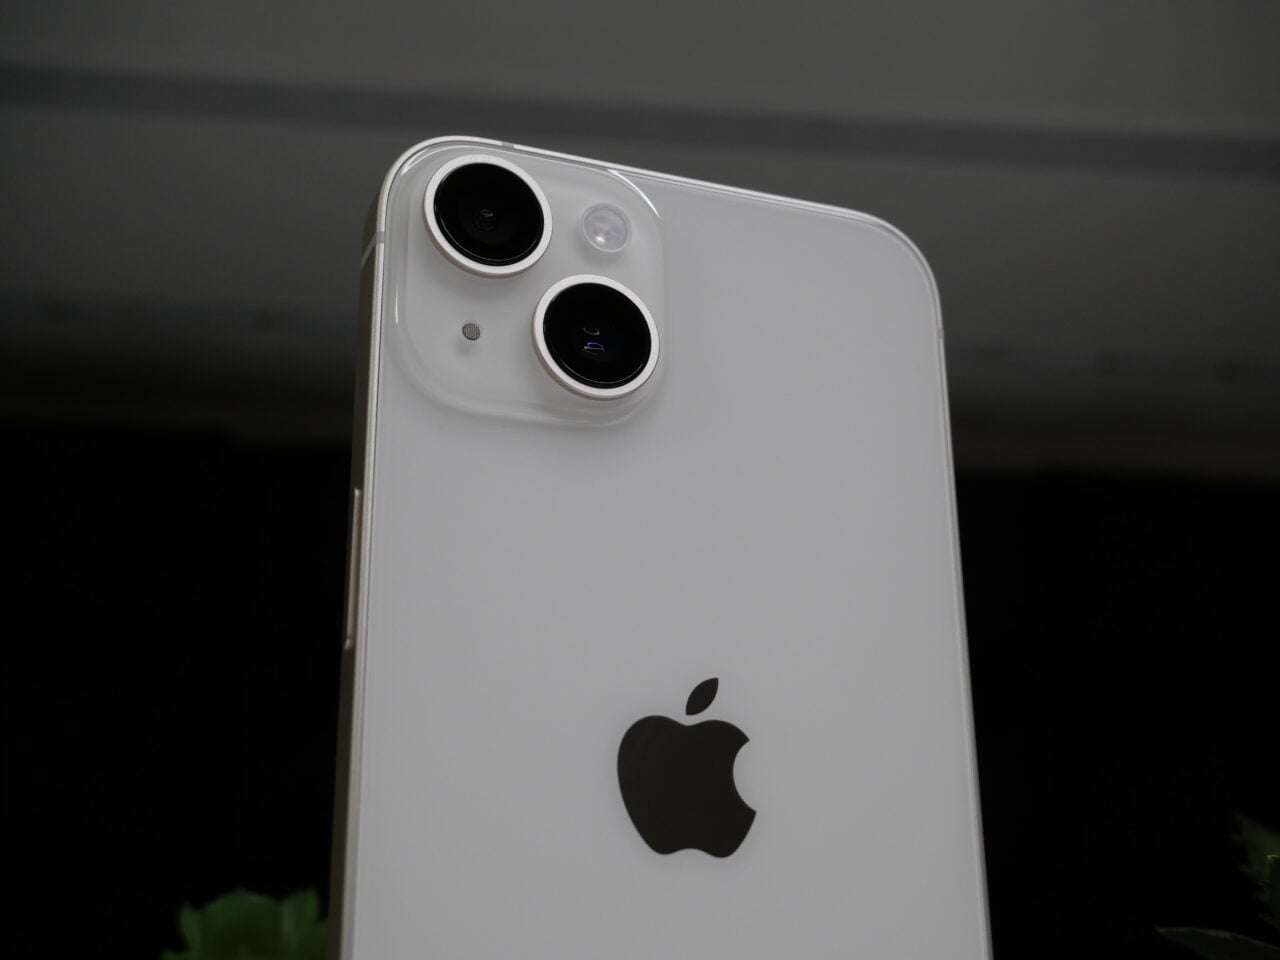 Tył smartfona z podwójnym aparatem fotograficznym i logo firmy Apple.